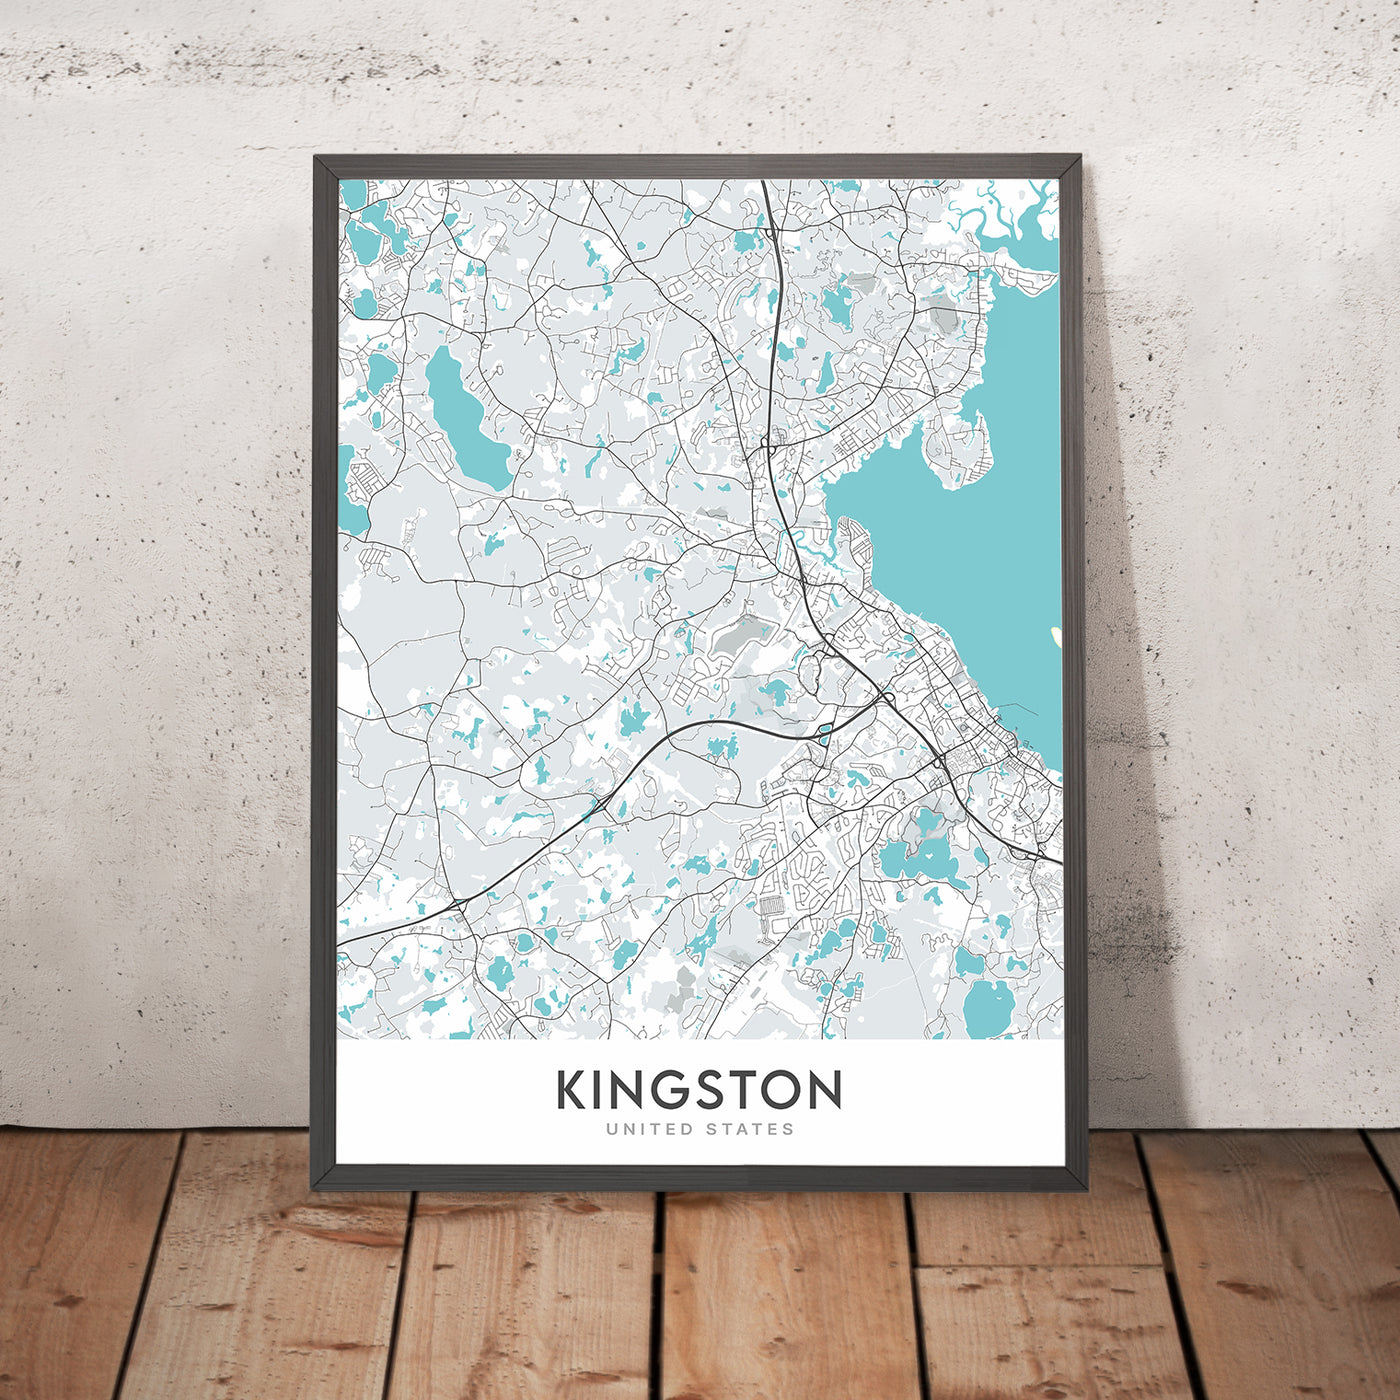 Moderner Stadtplan von Kingston, MA: Kingston Collection, Silver Lake, Jones River, MA-3A, US-44